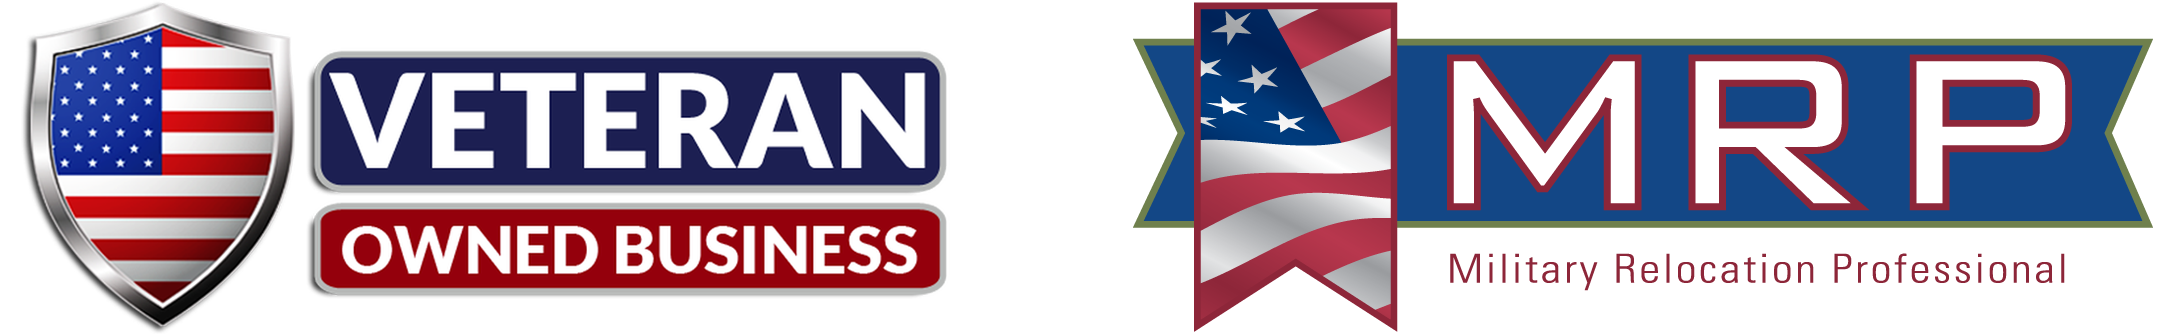 173-veteran-logos.png